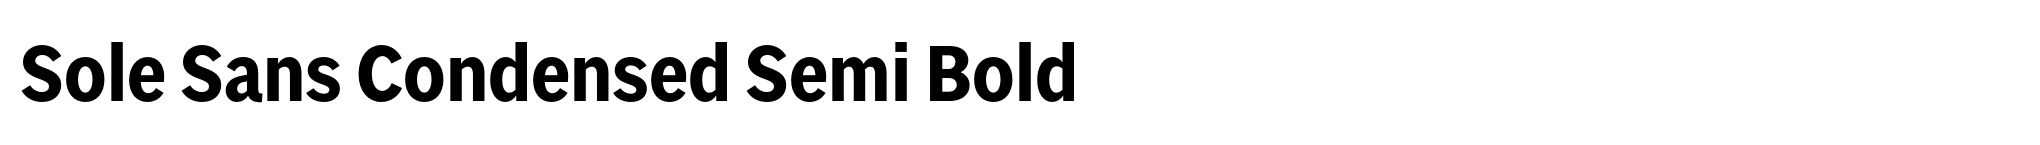 Sole Sans Condensed Semi Bold image